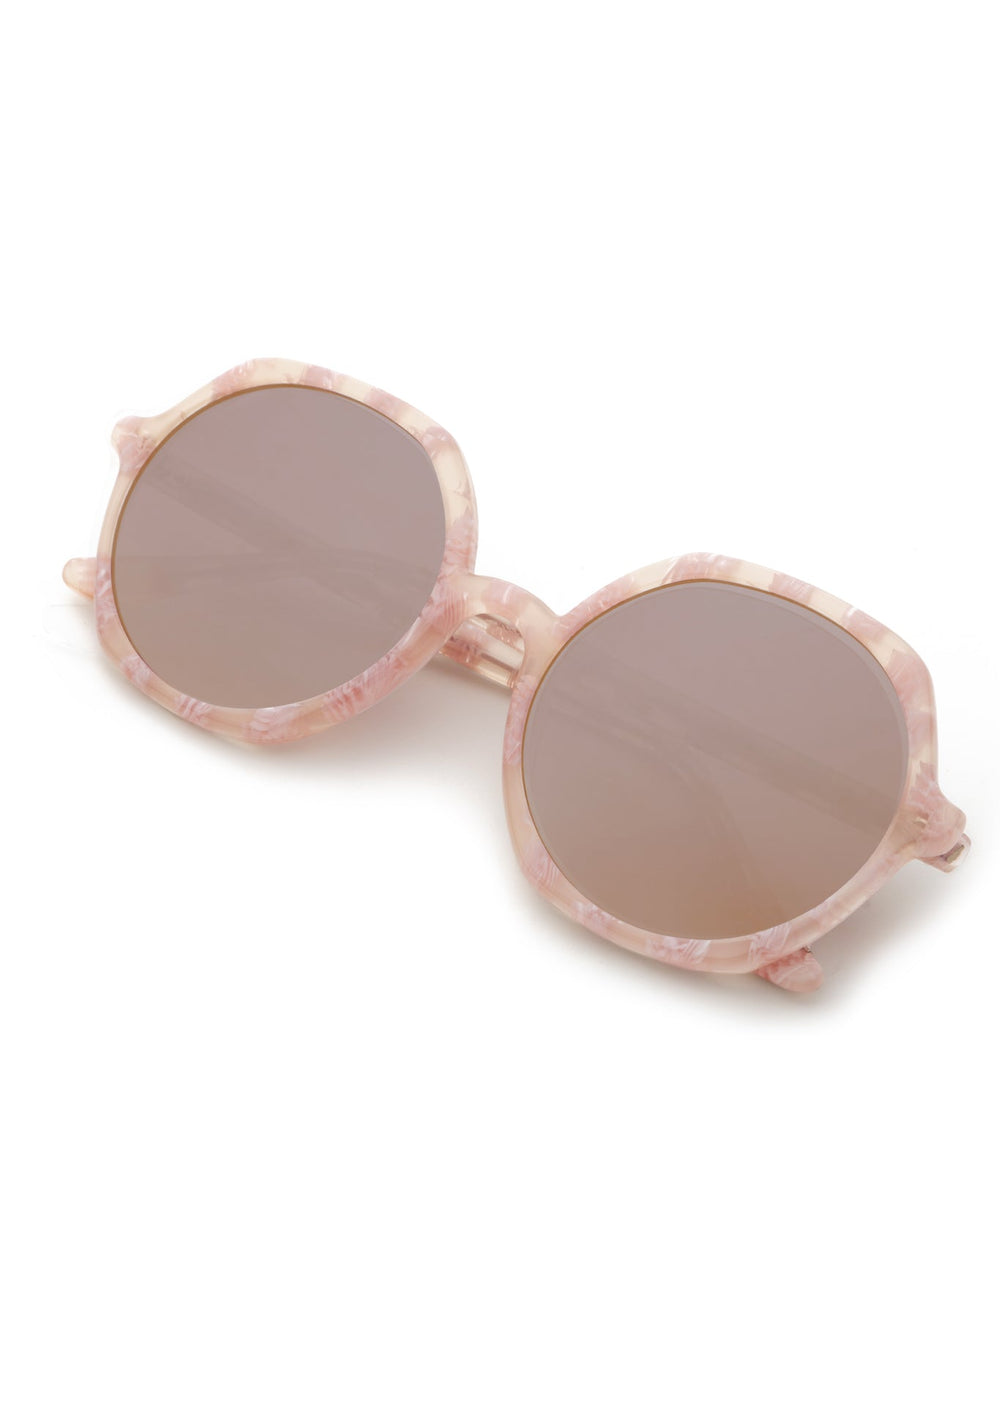 KREWE SUNGLASSES - SOPHIA | Plaid Mirrored handcrafted, luxury pink checkered oversized round women's sunglasses